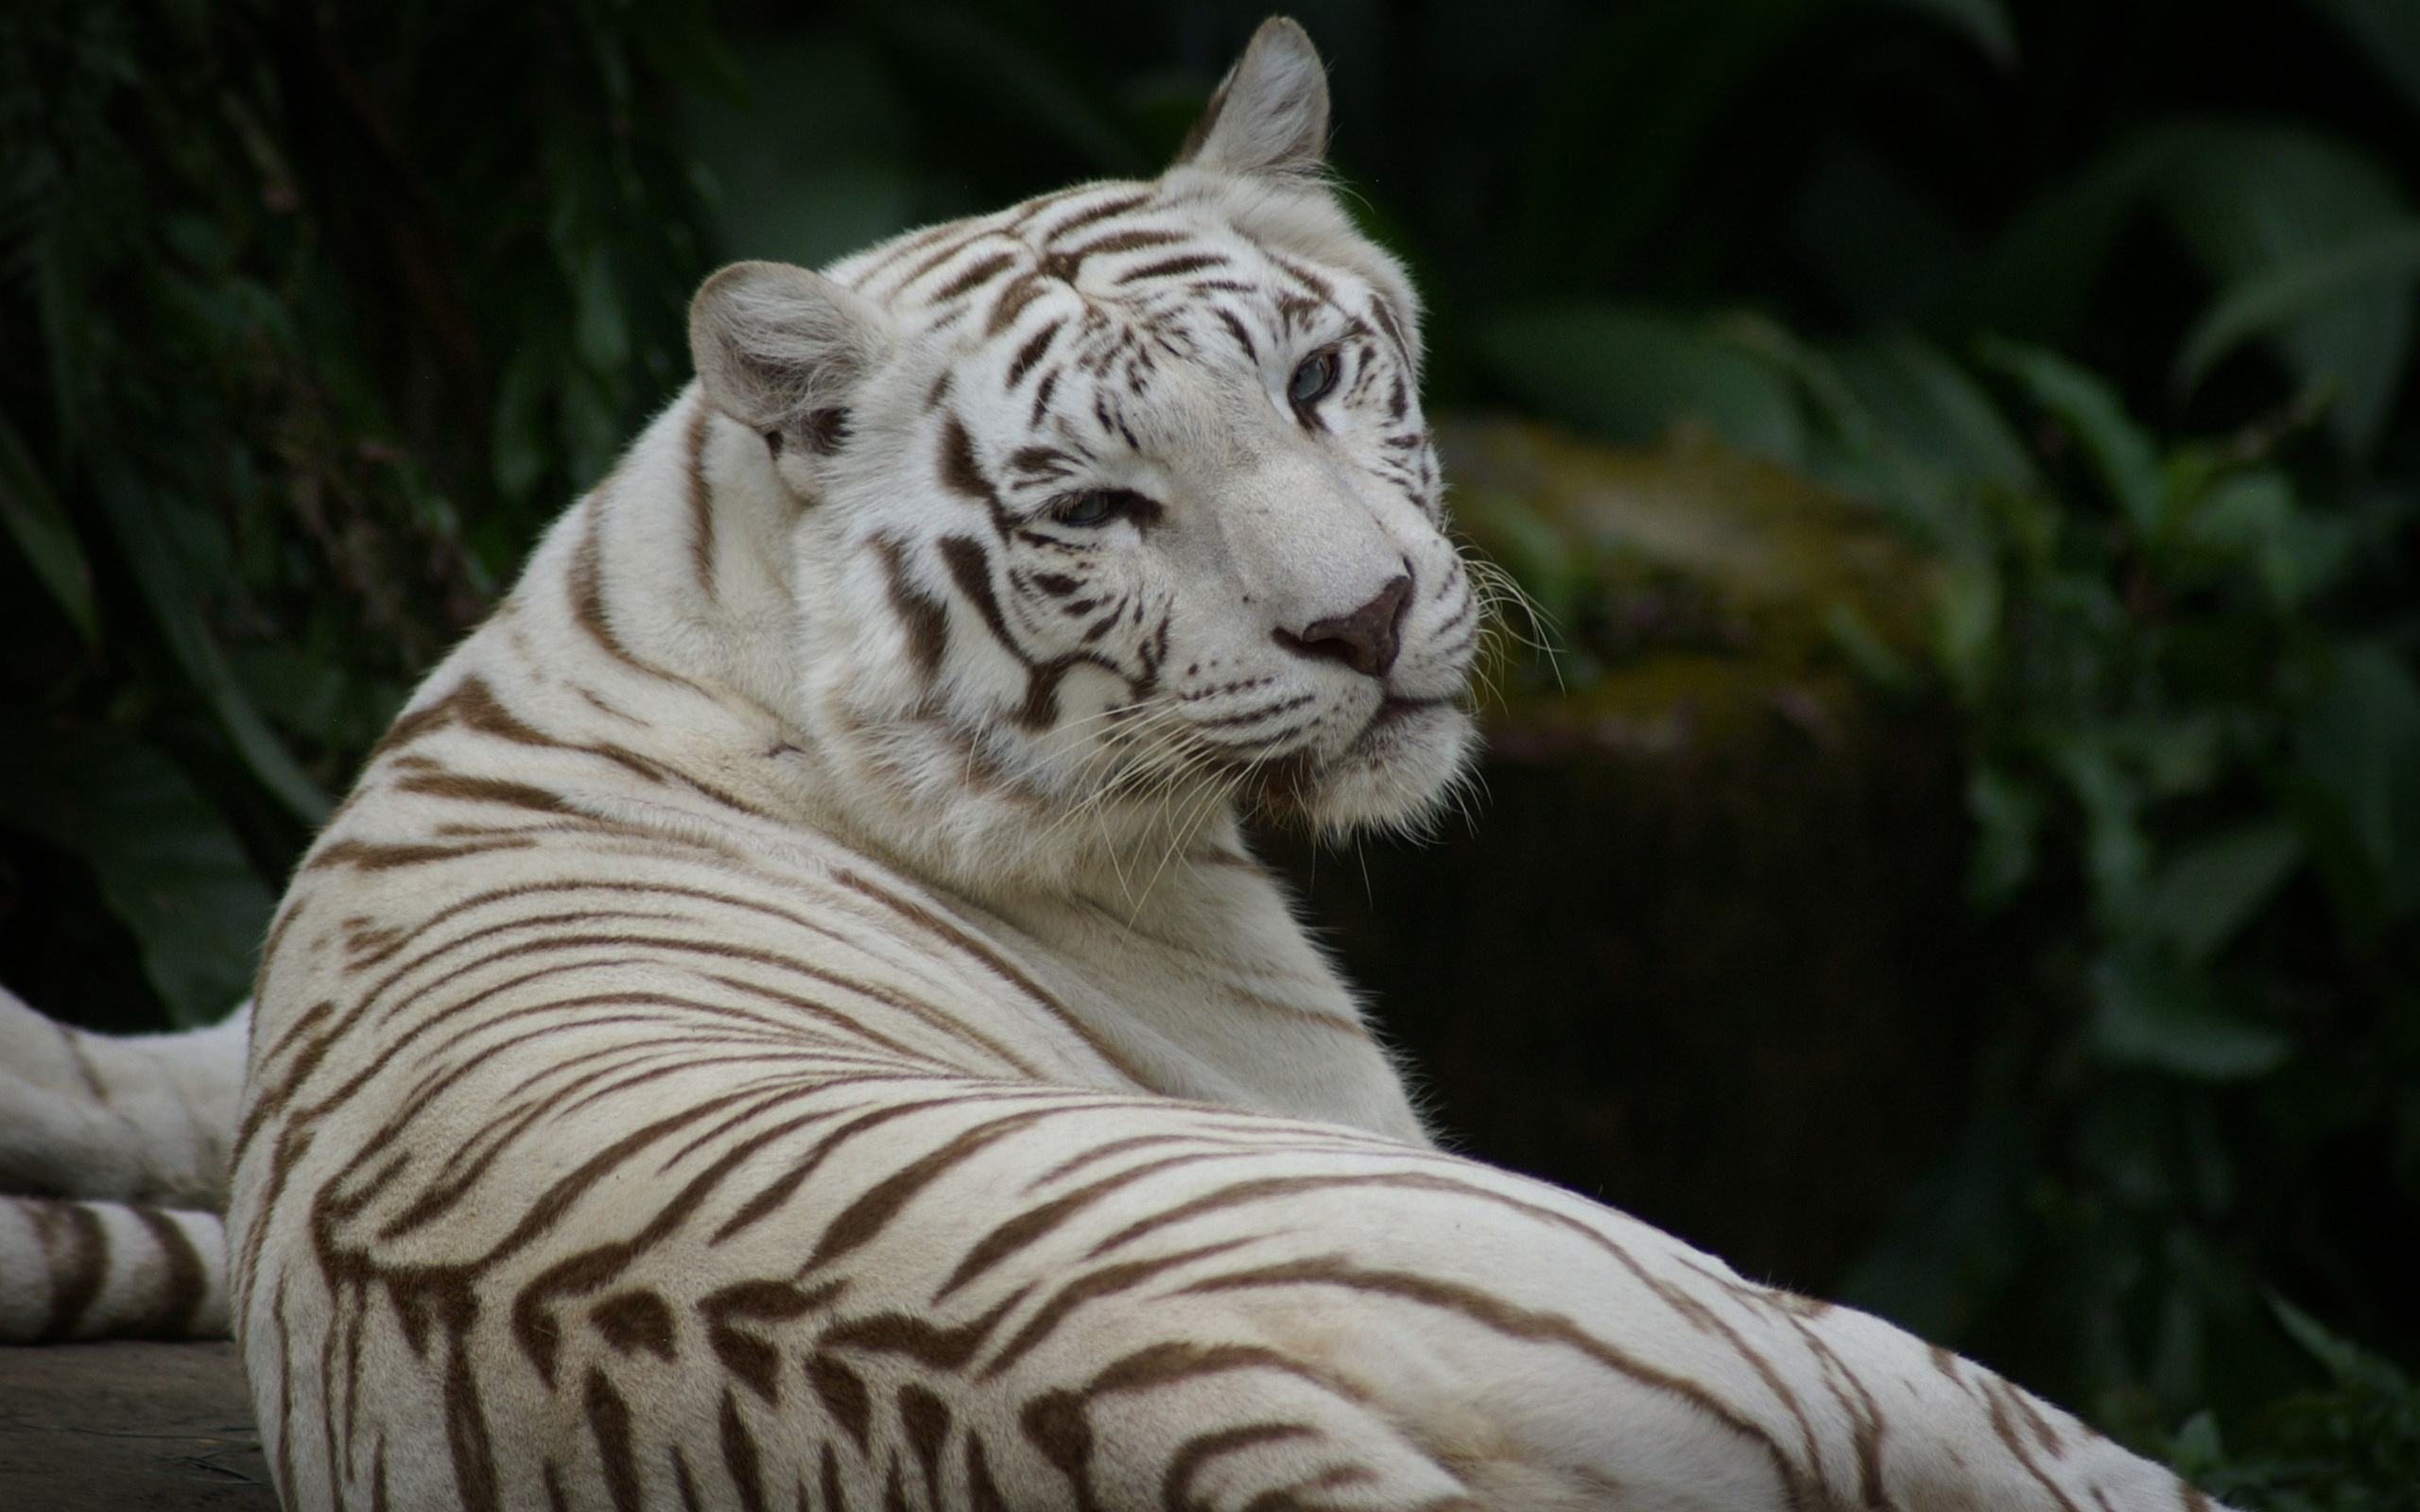 Скачать обои бесплатно Белый Тигр, Животные, Кошки картинка на рабочий стол ПК